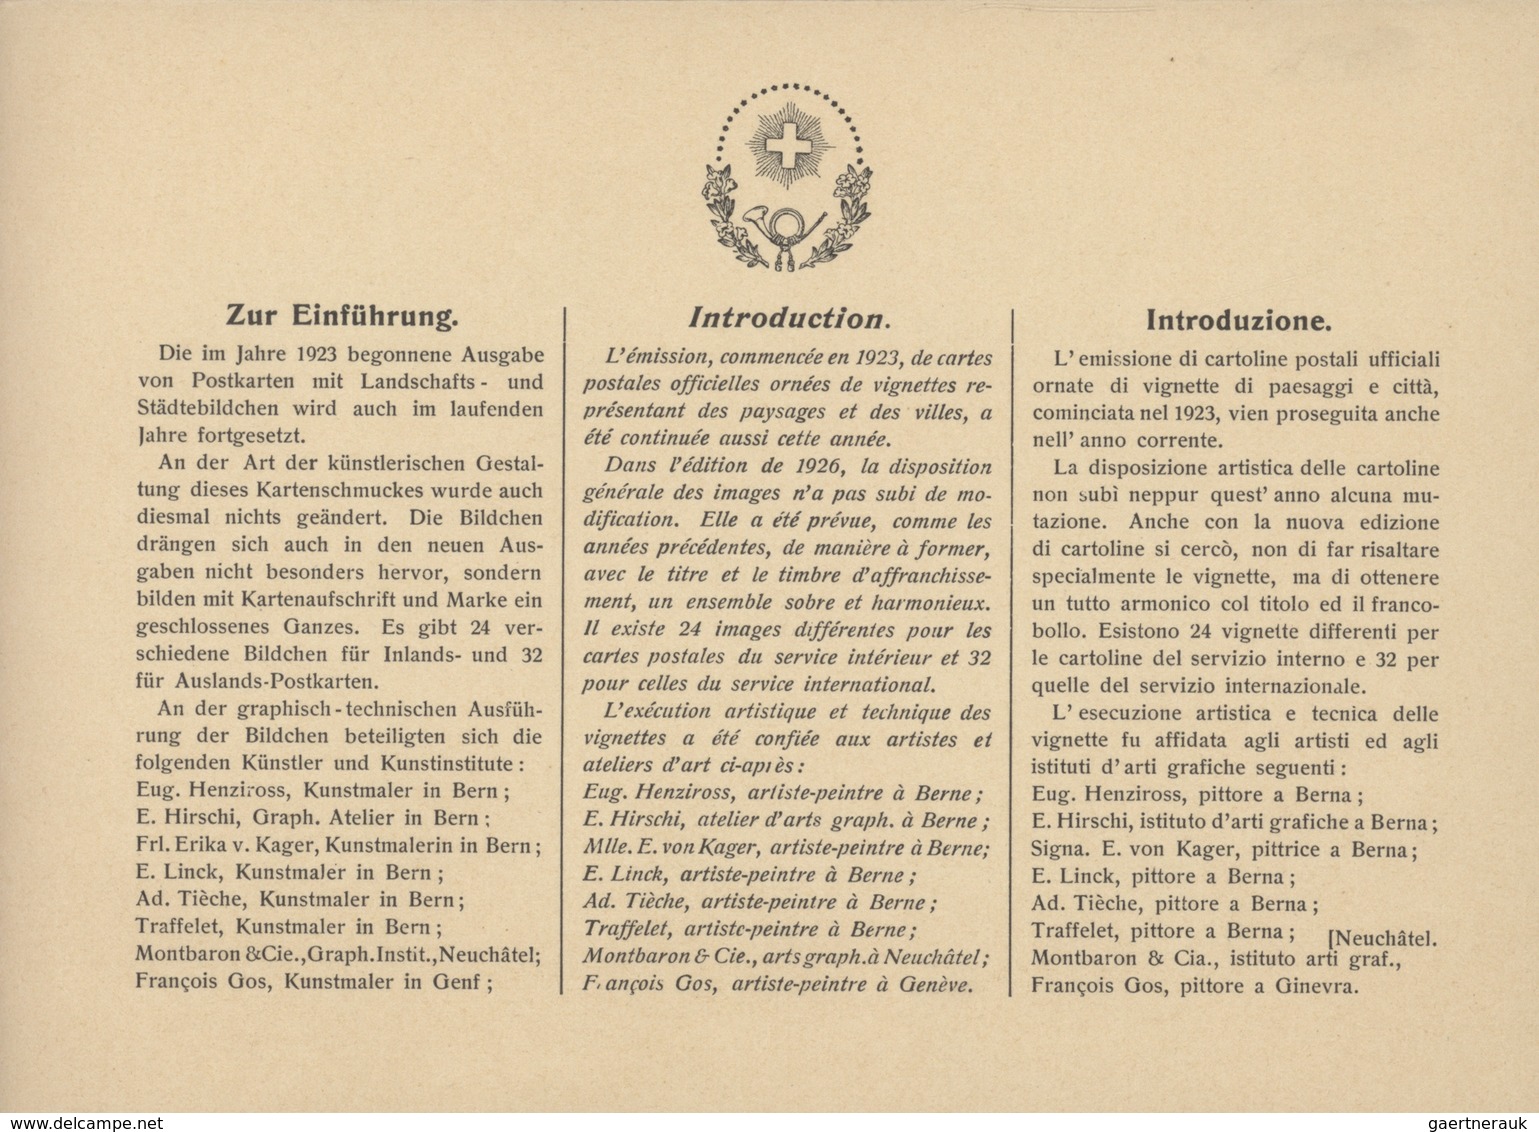 Schweiz - Ganzsachen: 1926 Komplettes Geschenkheft der OPD Bern mit Karten zu 10 Rp. und 20 Rp. in v